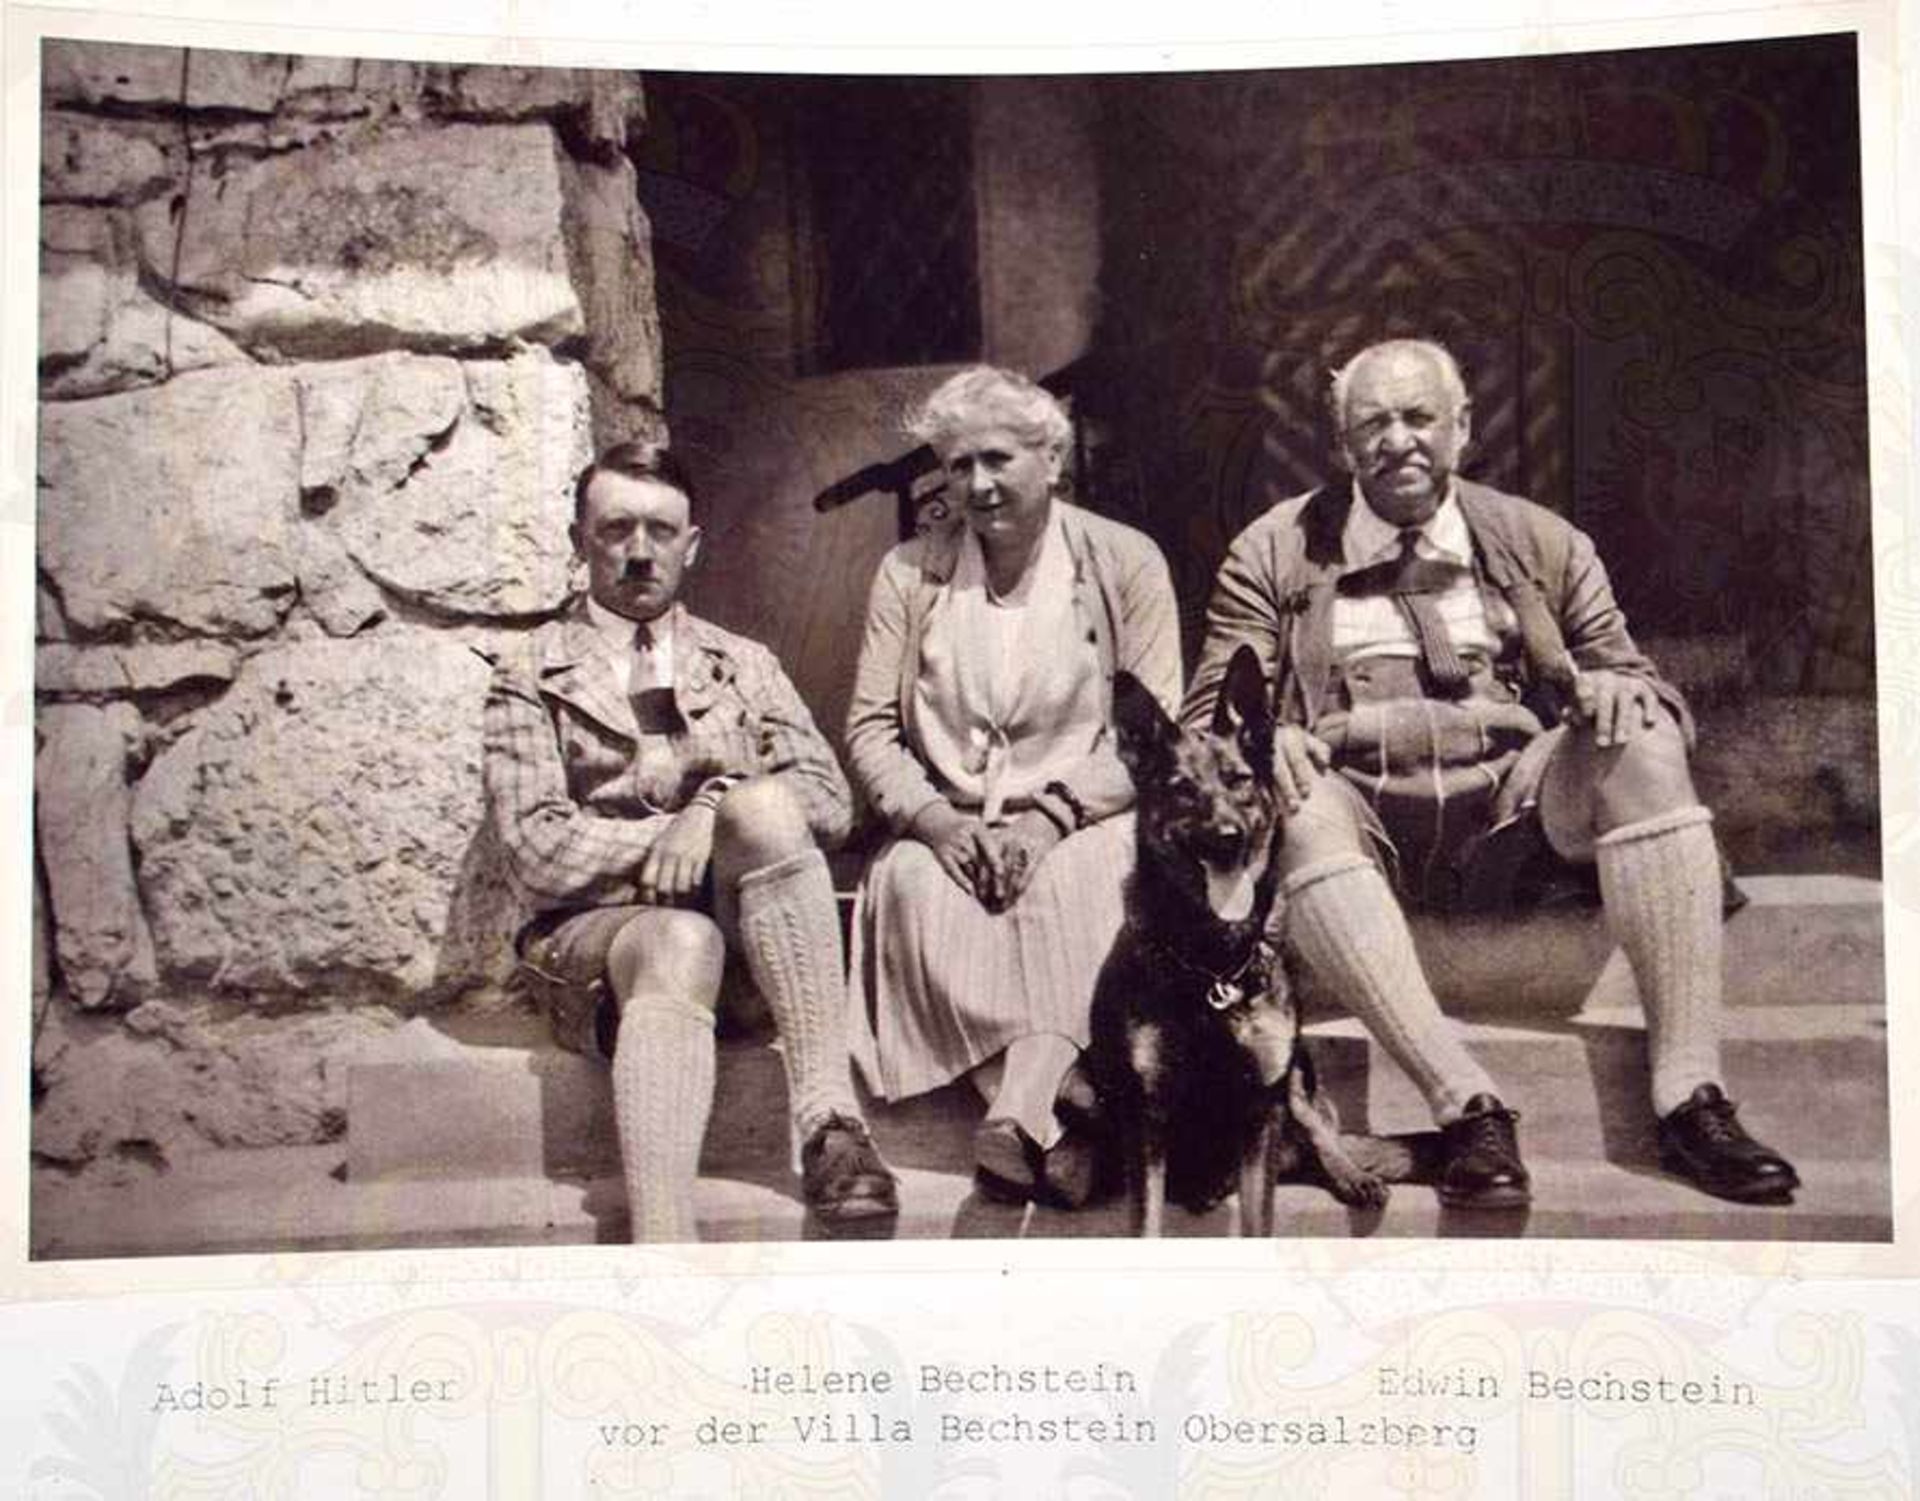 AQUARELL VON ADOLF HITLER (BRAUNAU 1889 - BERLIN 1945), aus dem Besitz der Familie Bechstein, - Bild 5 aus 13